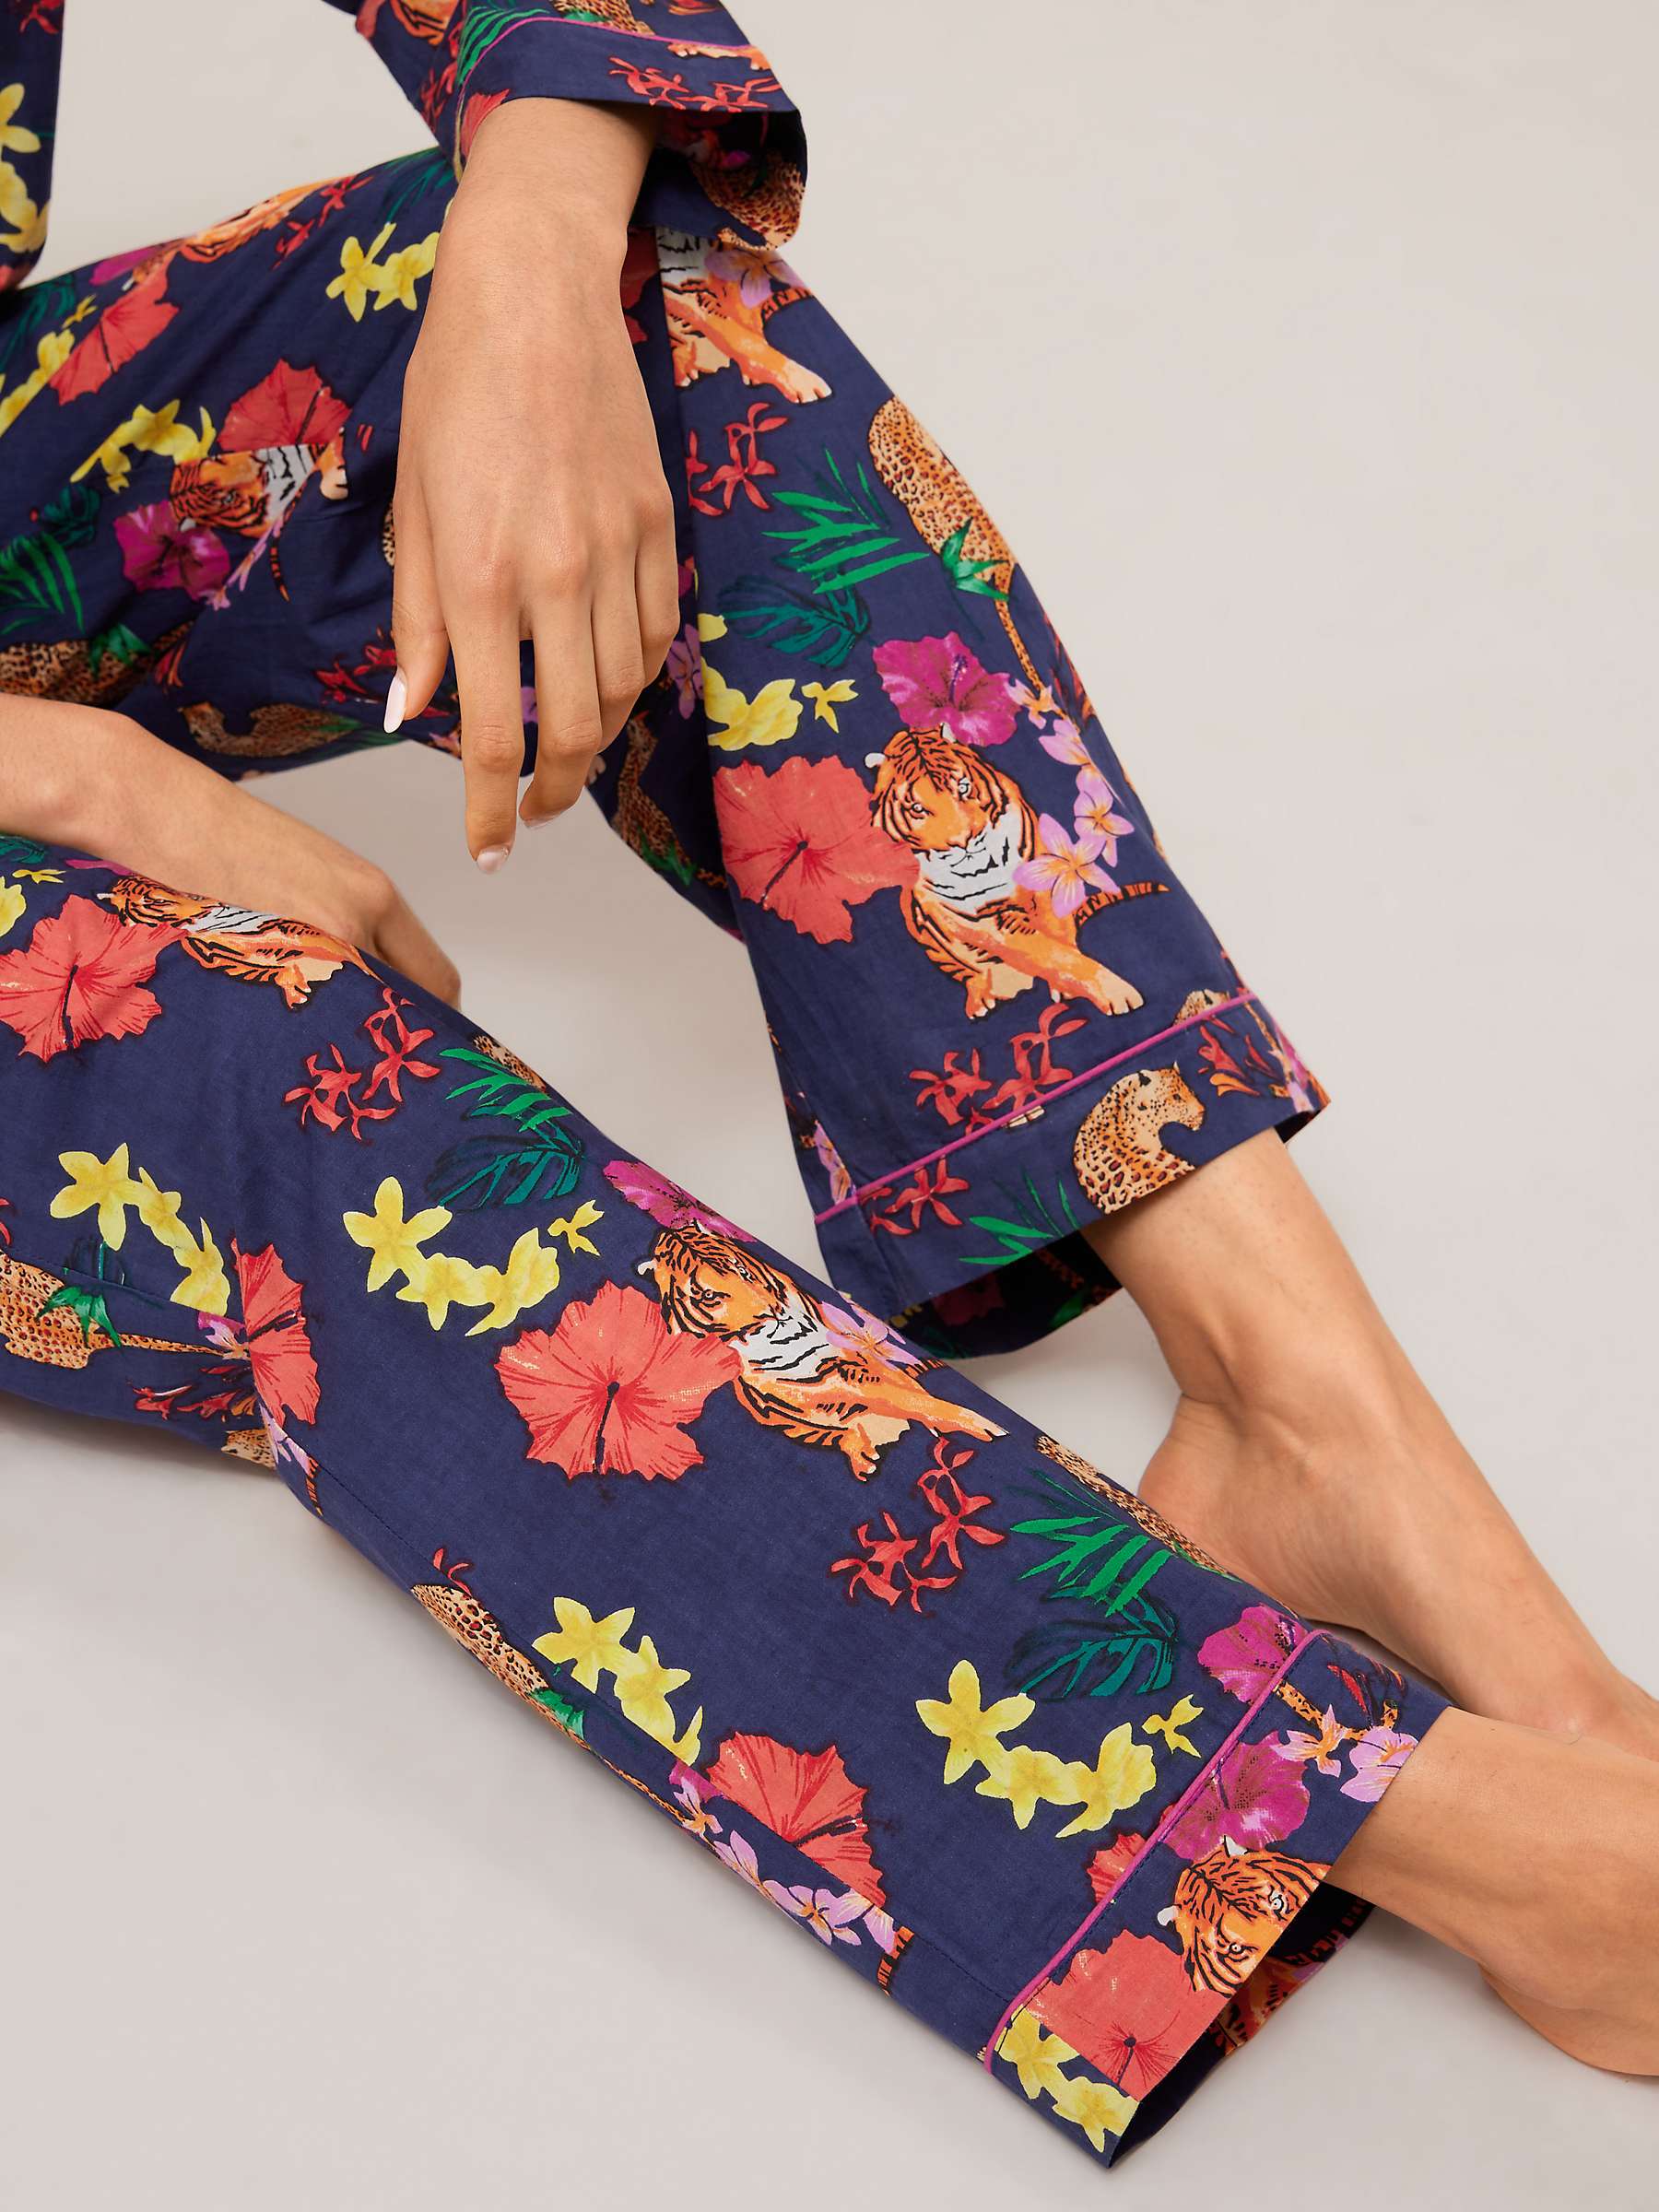 Buy Their Nibs Tropical Tigers Pyjama Set, Navy Online at johnlewis.com